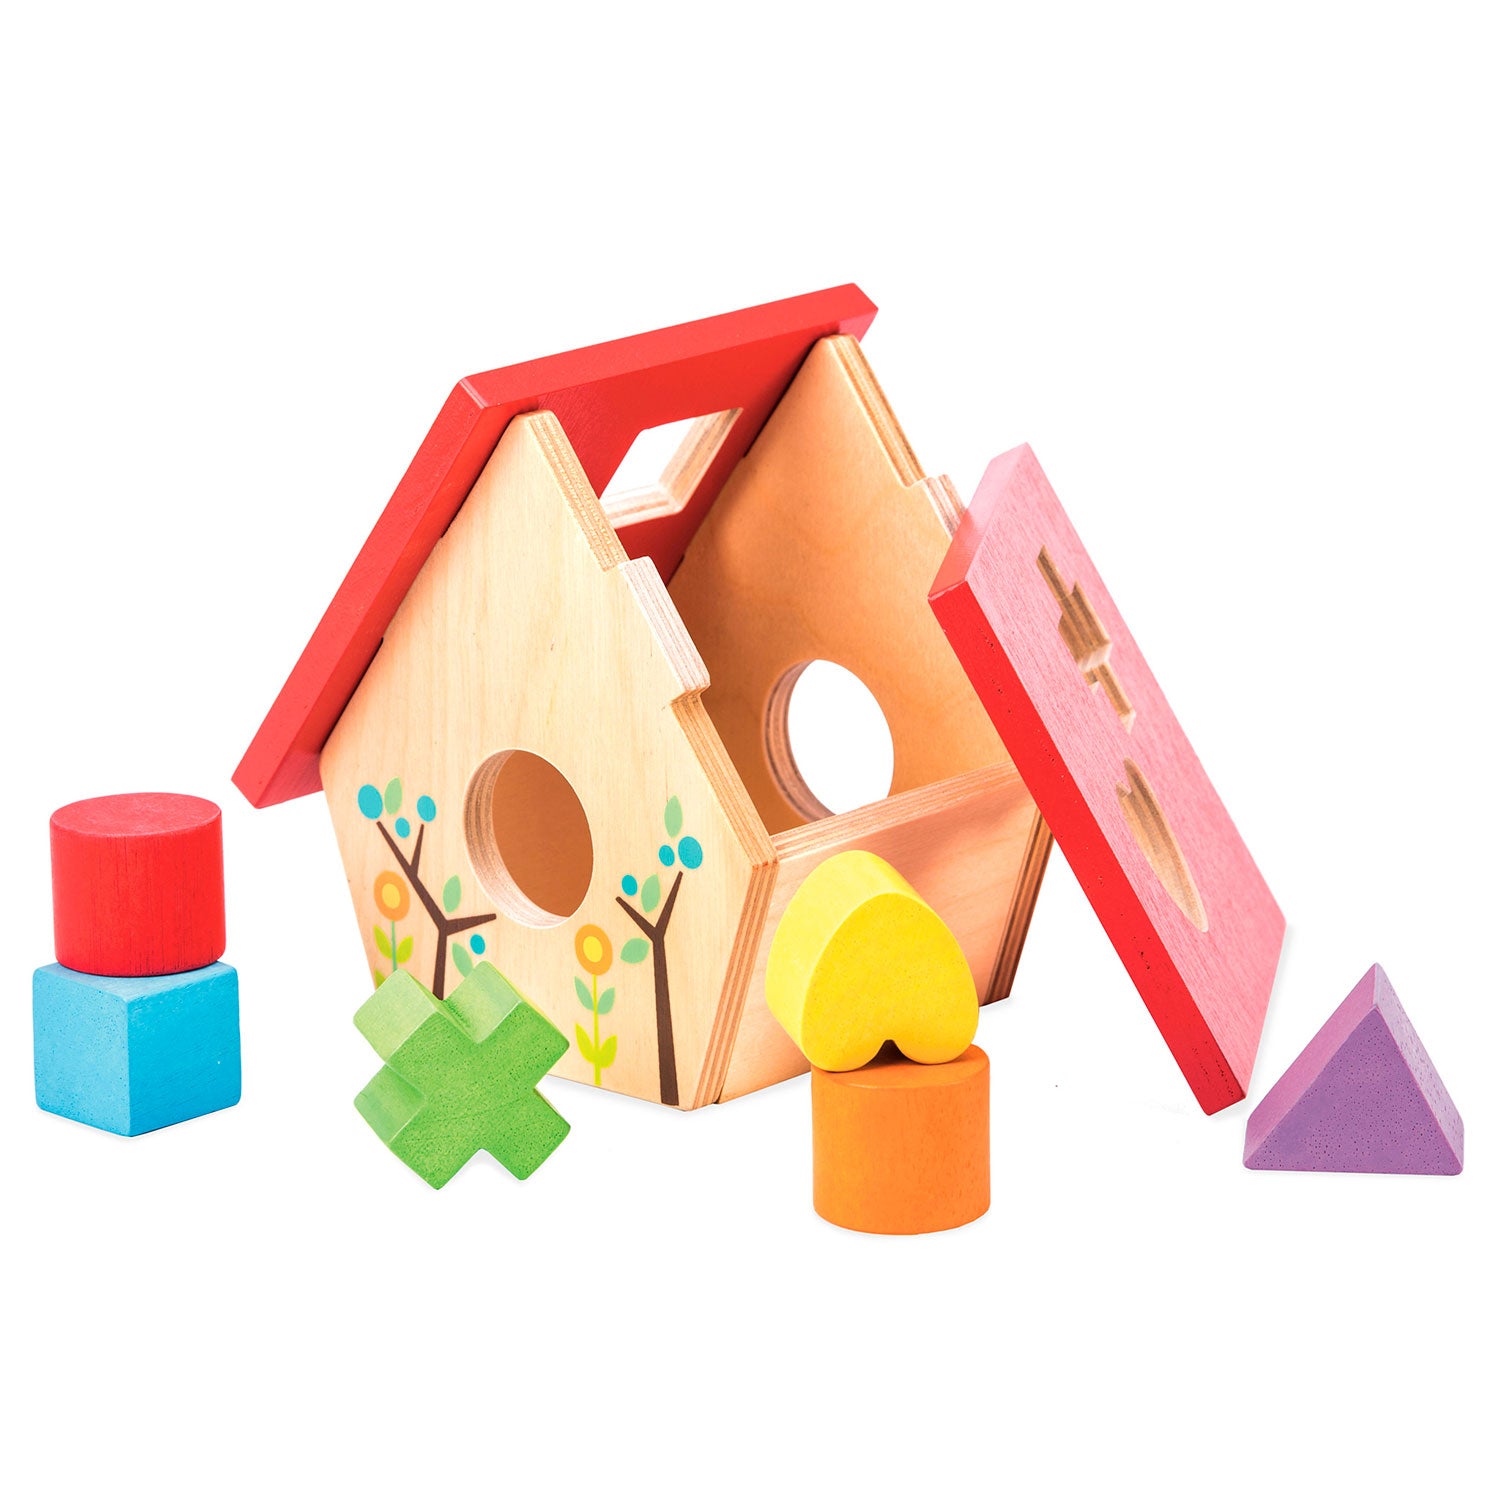 Boite à formes en bois pour bébé dès 18 mois. En forme de petite maison d'oiseau avec un toit rouge. Formes en bois colorées : cylindre rouge, cube bleu, coeur jaune, cylindre orange, triangle violet, croix verte.